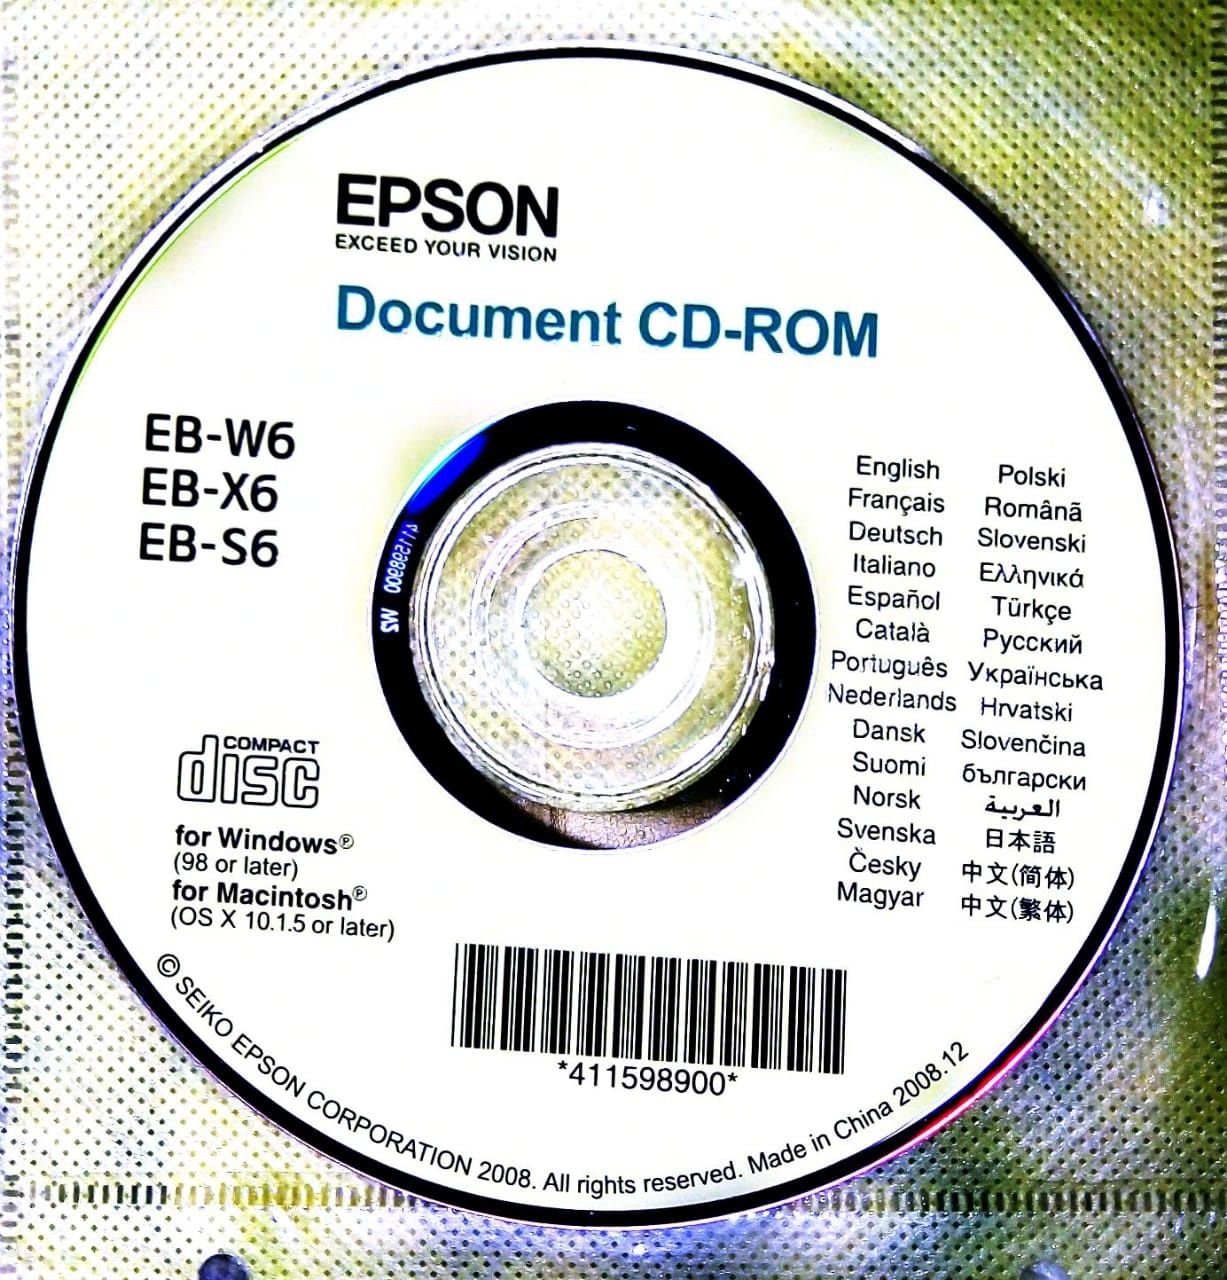 Проектор EPSON EB-S62